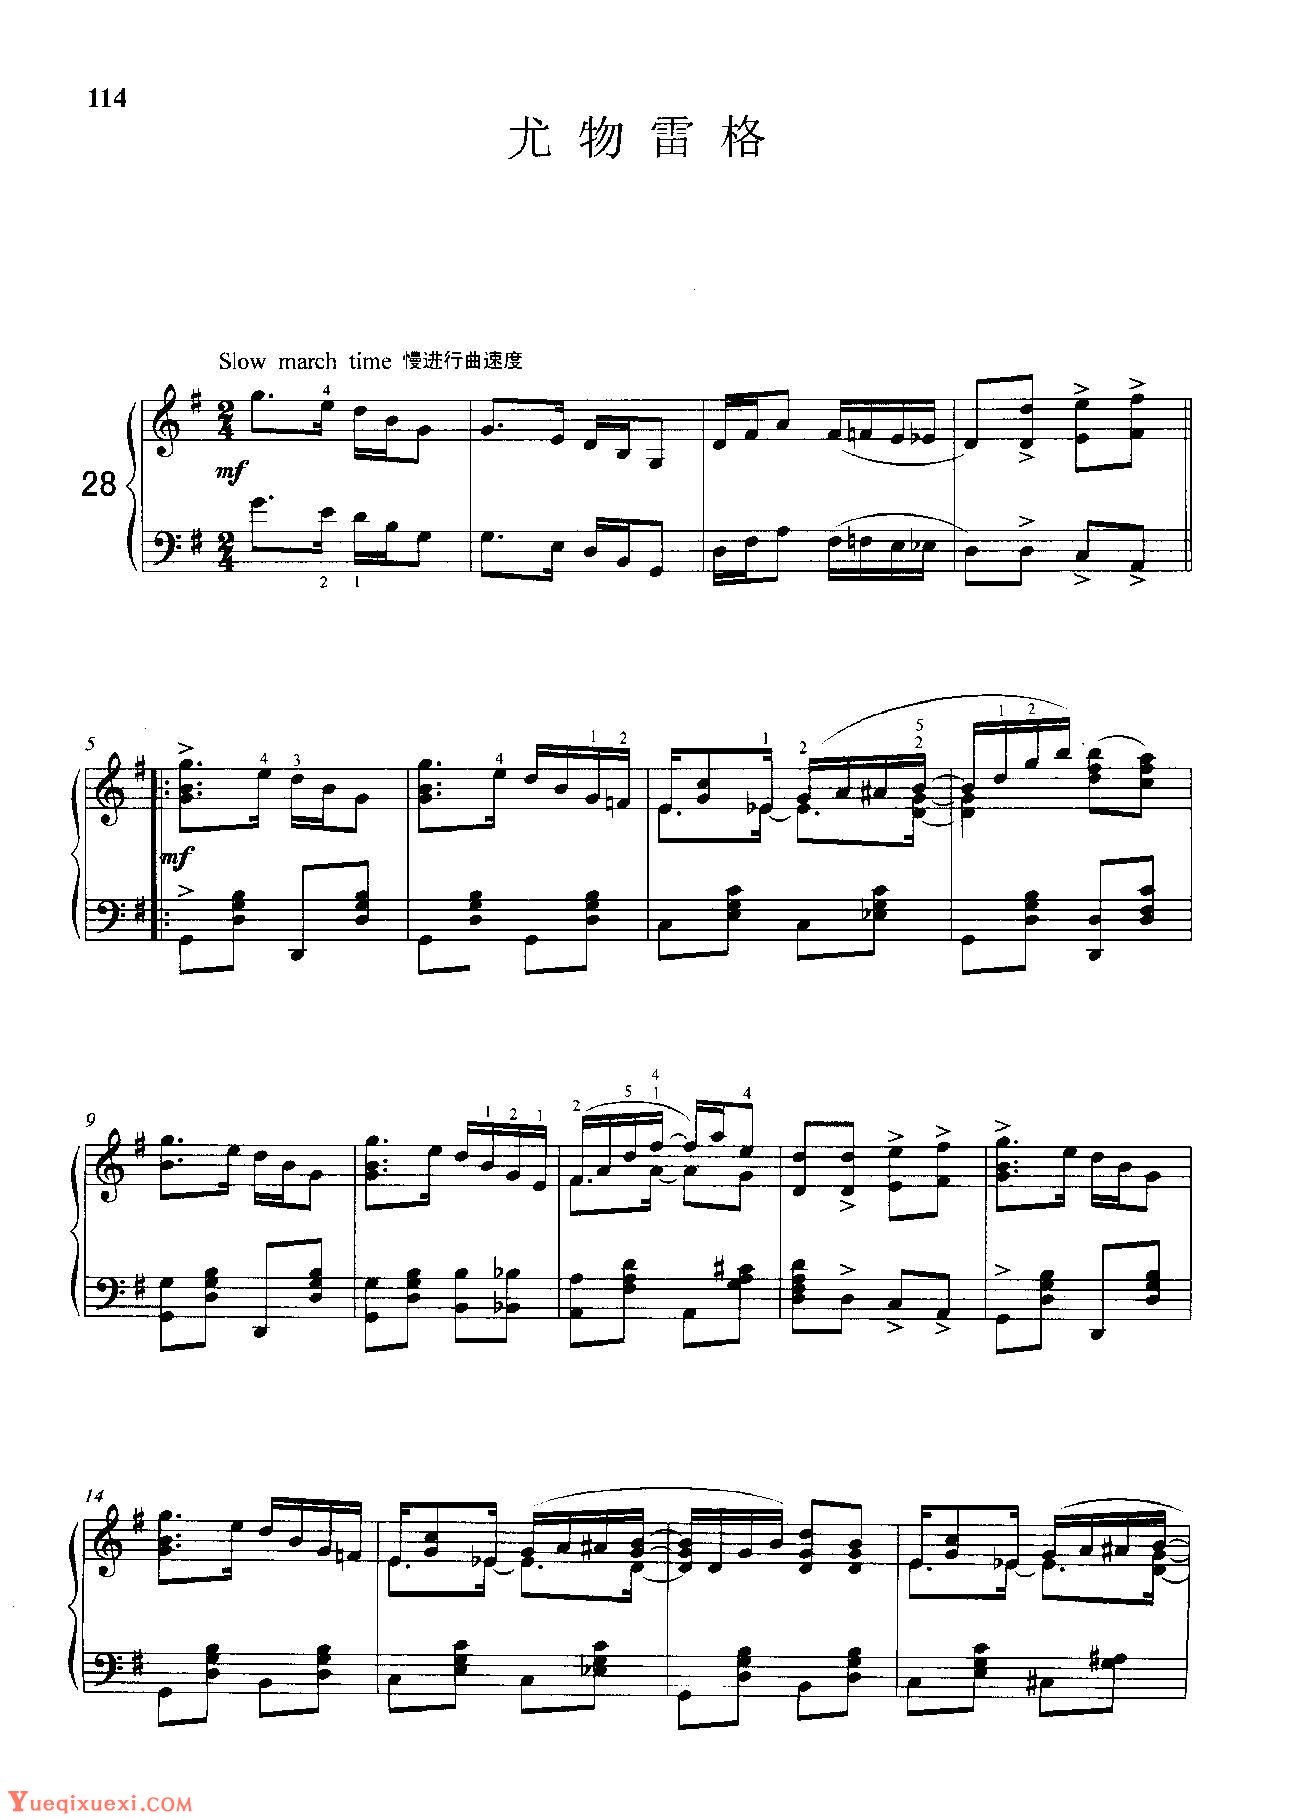 雷格泰姆钢琴乐谱《尤物雷格》雷格泰姆之王斯科特·乔普林